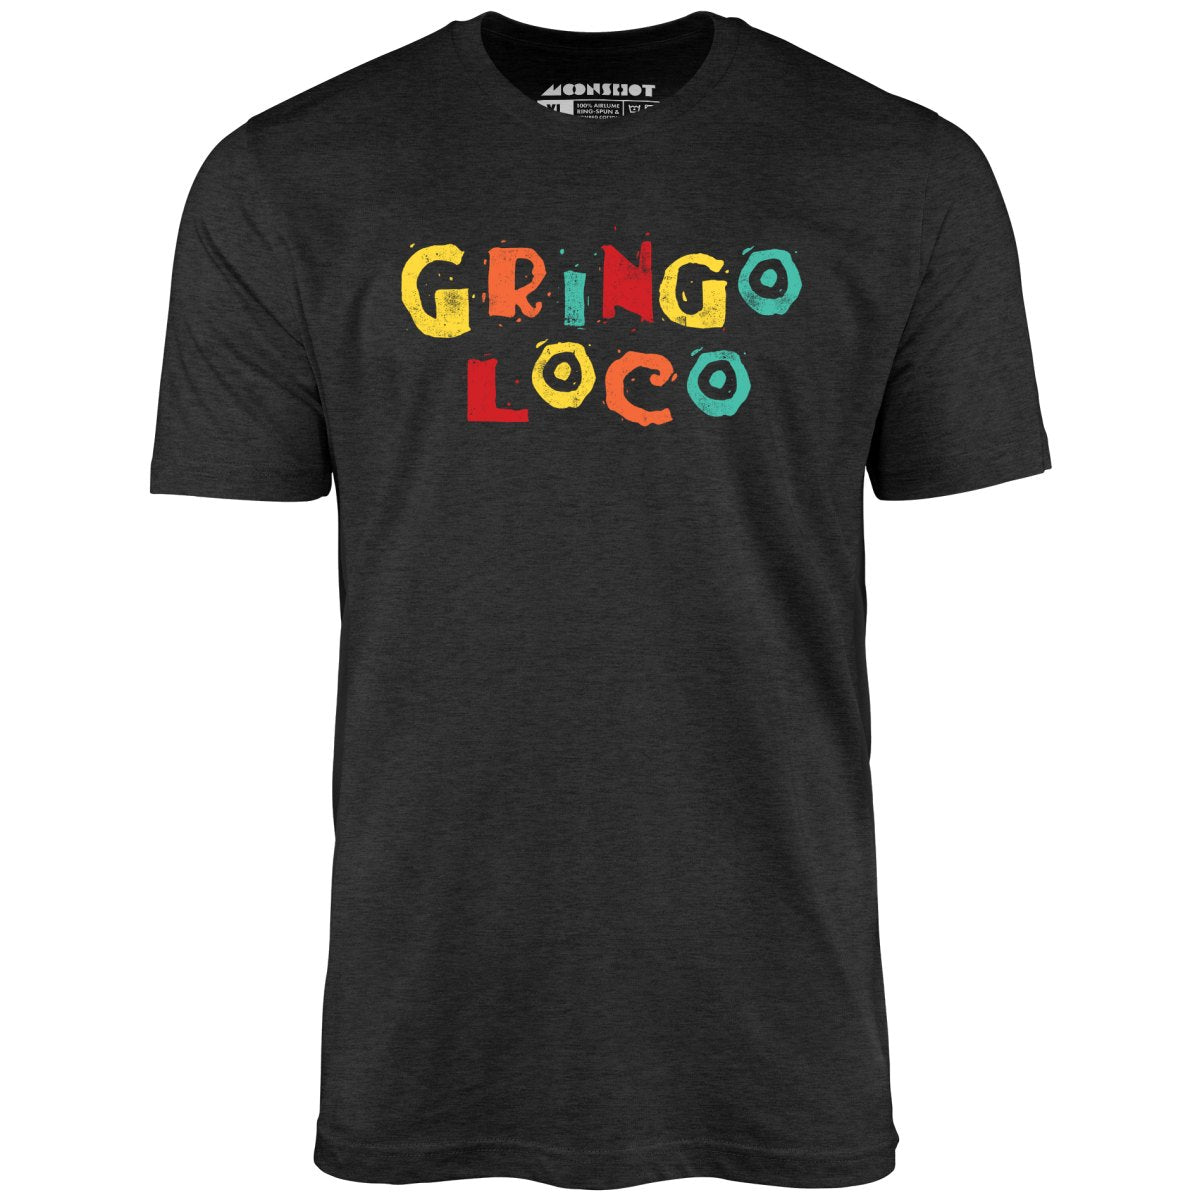 Gringo Loco - Unisex T-Shirt